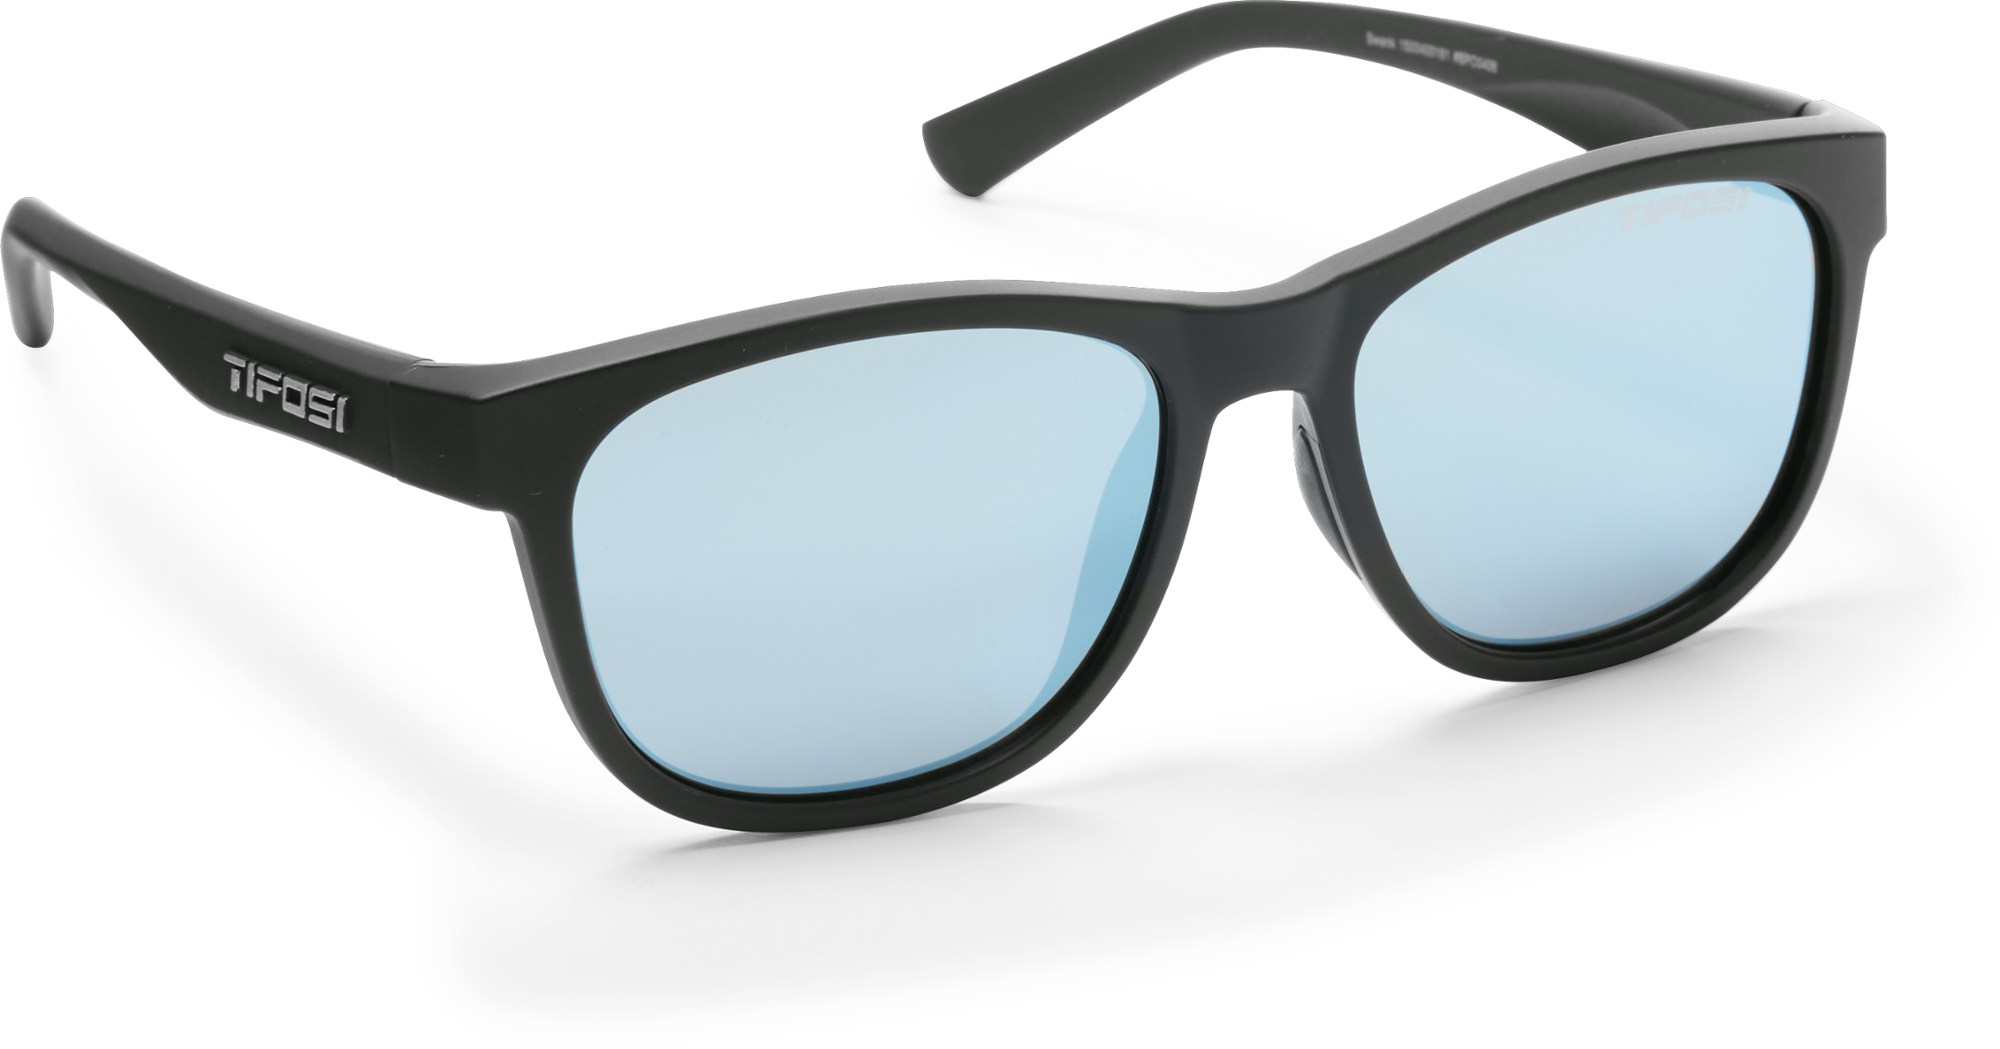 солнцезащитные очки veloce reader tifosi optics цвет matte black smoke reader 2 0 Роскошные солнцезащитные очки Tifosi, черный